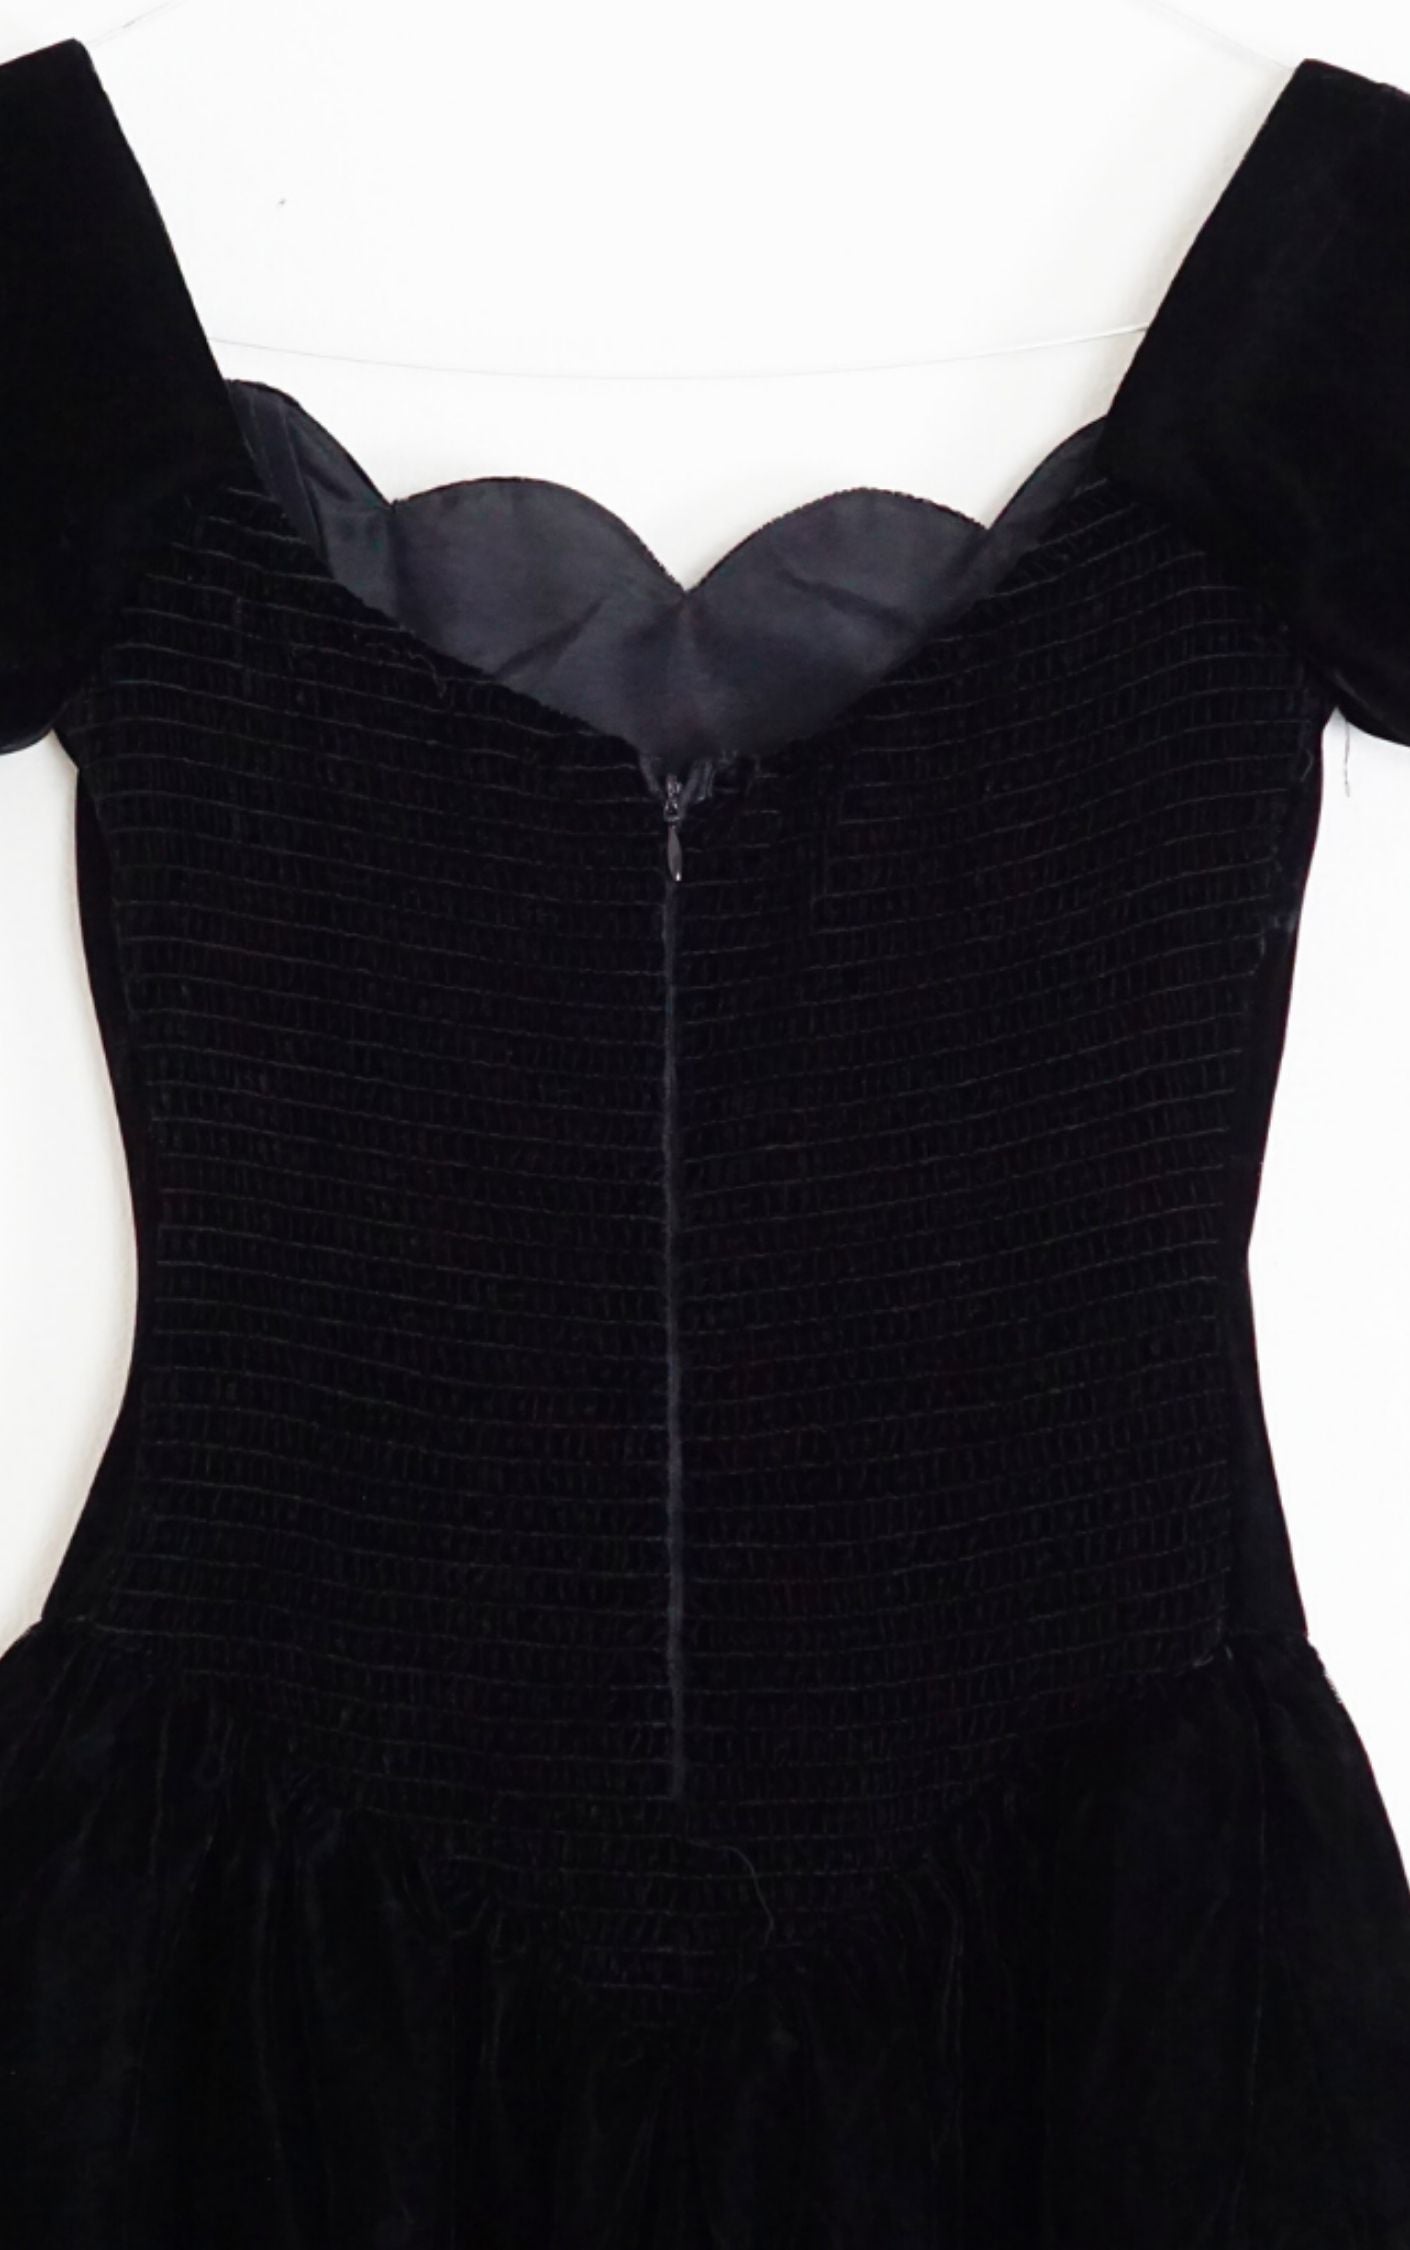 VINTAGE Black Velvet 80s Puff Ball Gown Dress